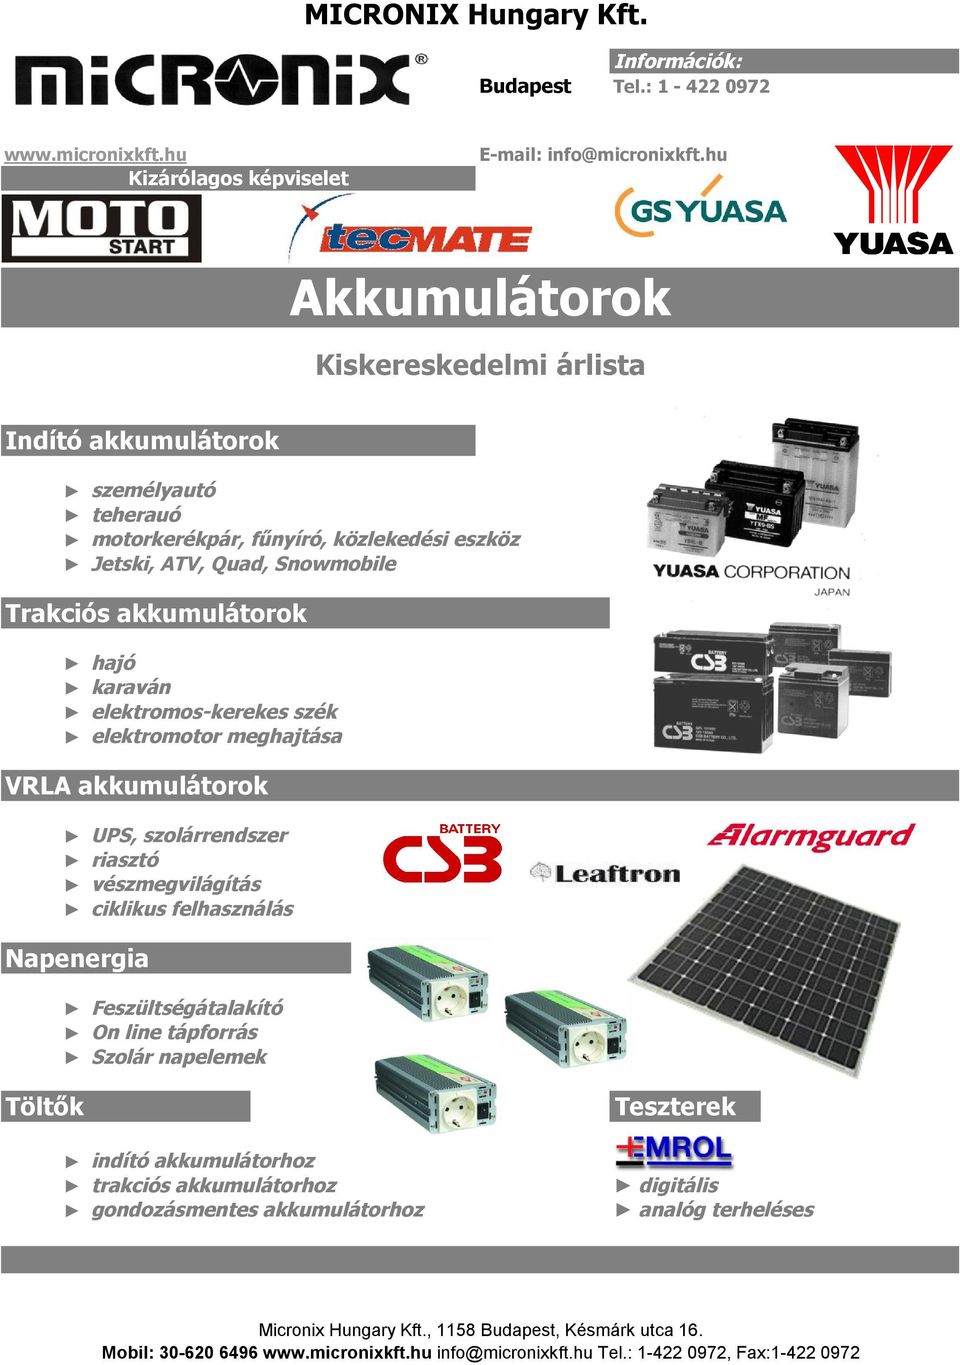 MICRONIX Hungary Kft. Akkumulátorok. Kiskereskedelmi árlista - PDF Ingyenes  letöltés